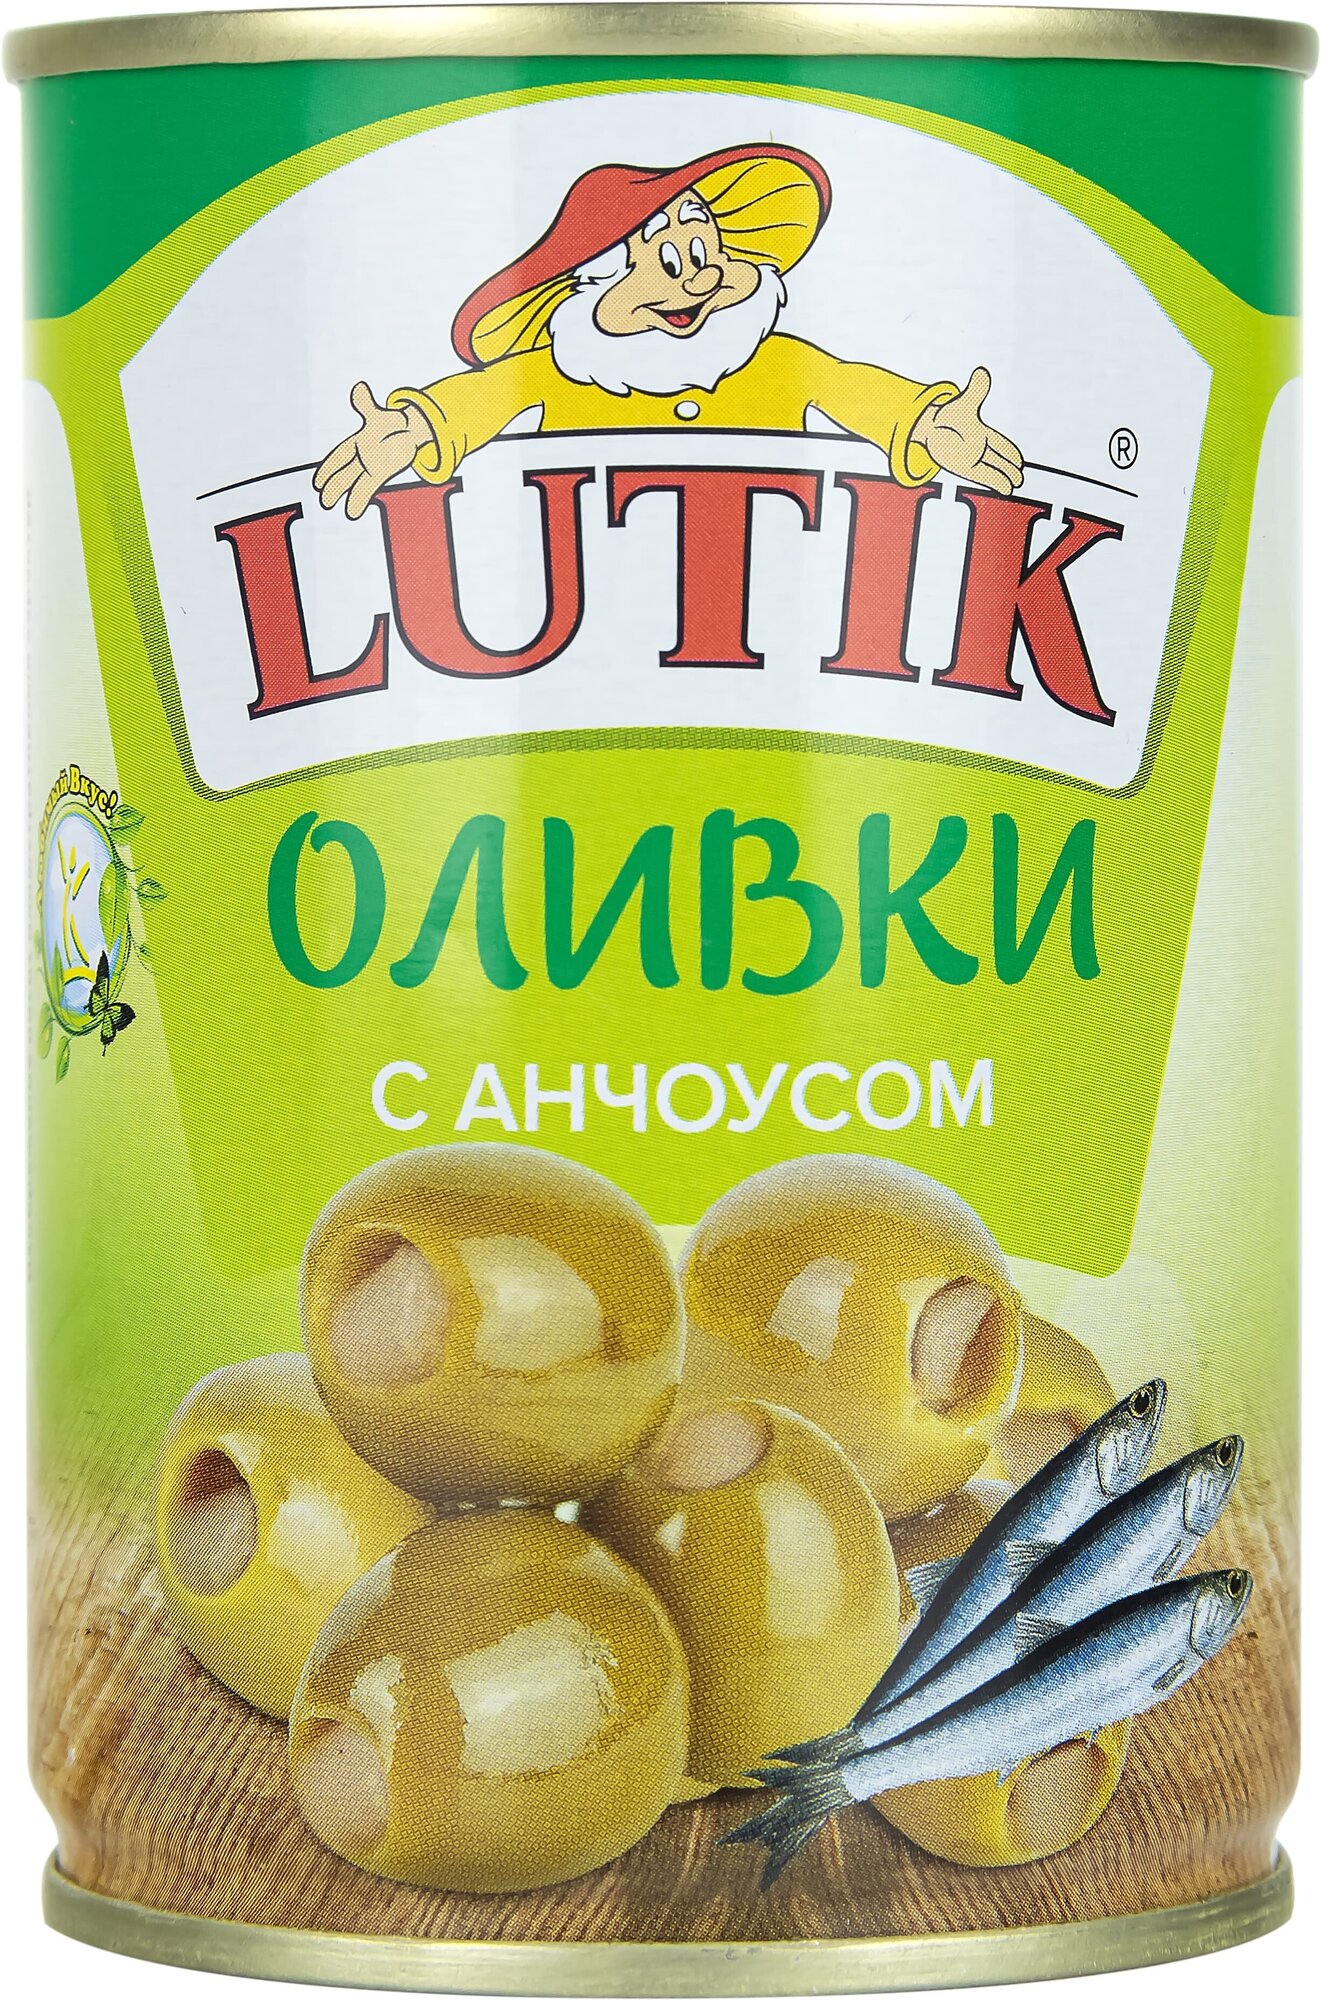 Оливки Lutik консервированные с анчоусом, 280г